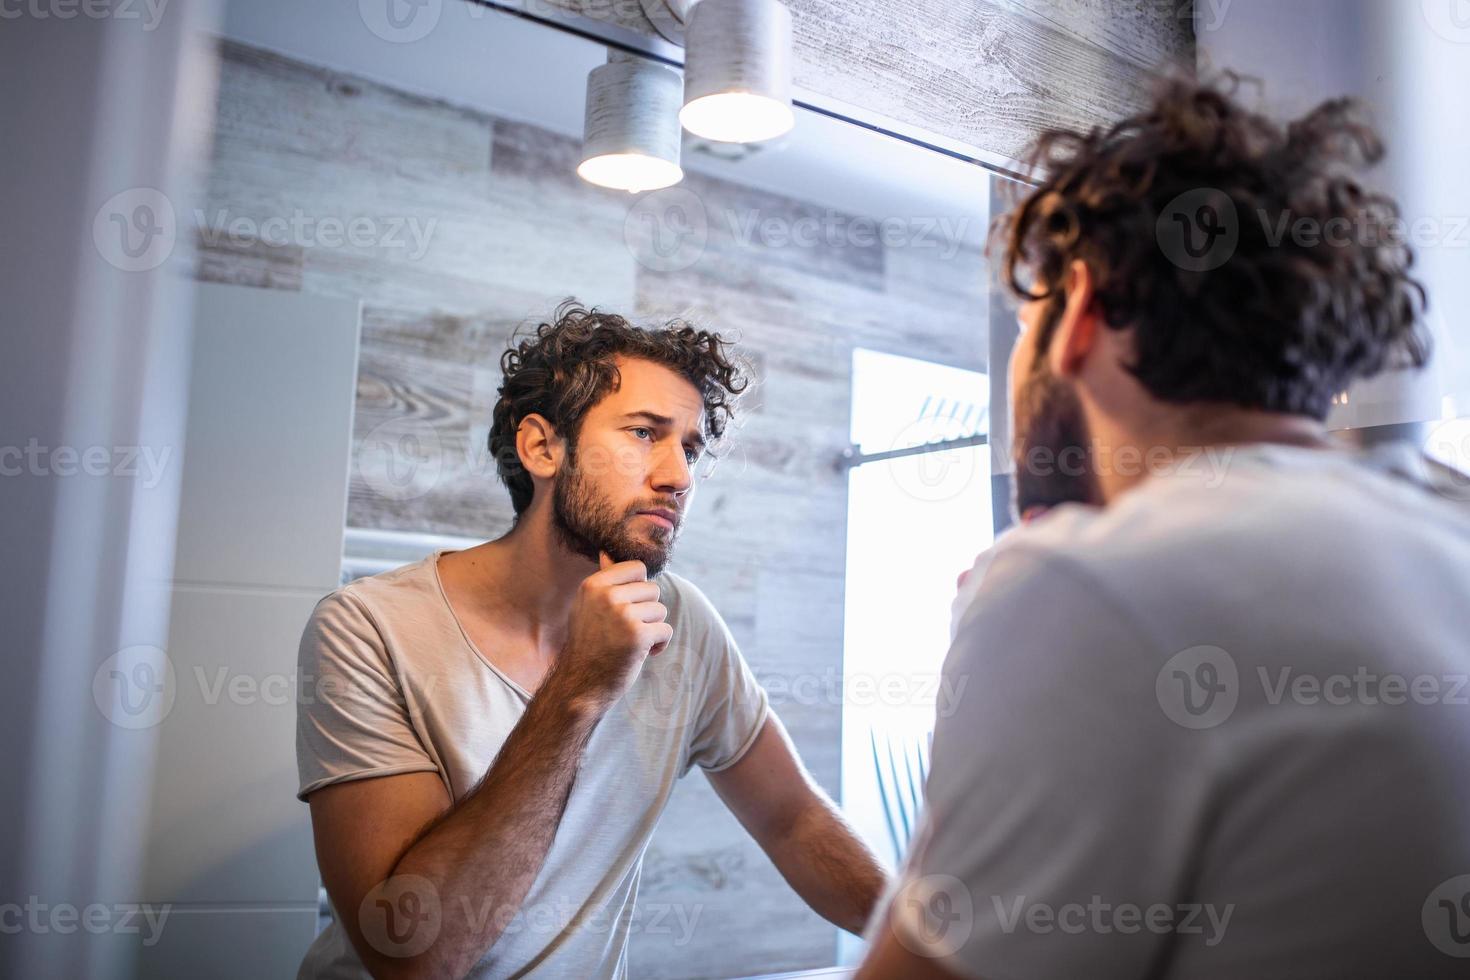 higiene matutina, hombre guapo en el baño mirándose en el espejo. reflejo de un hombre guapo con barba mirando al espejo y tocando la cara en el aseo del baño foto